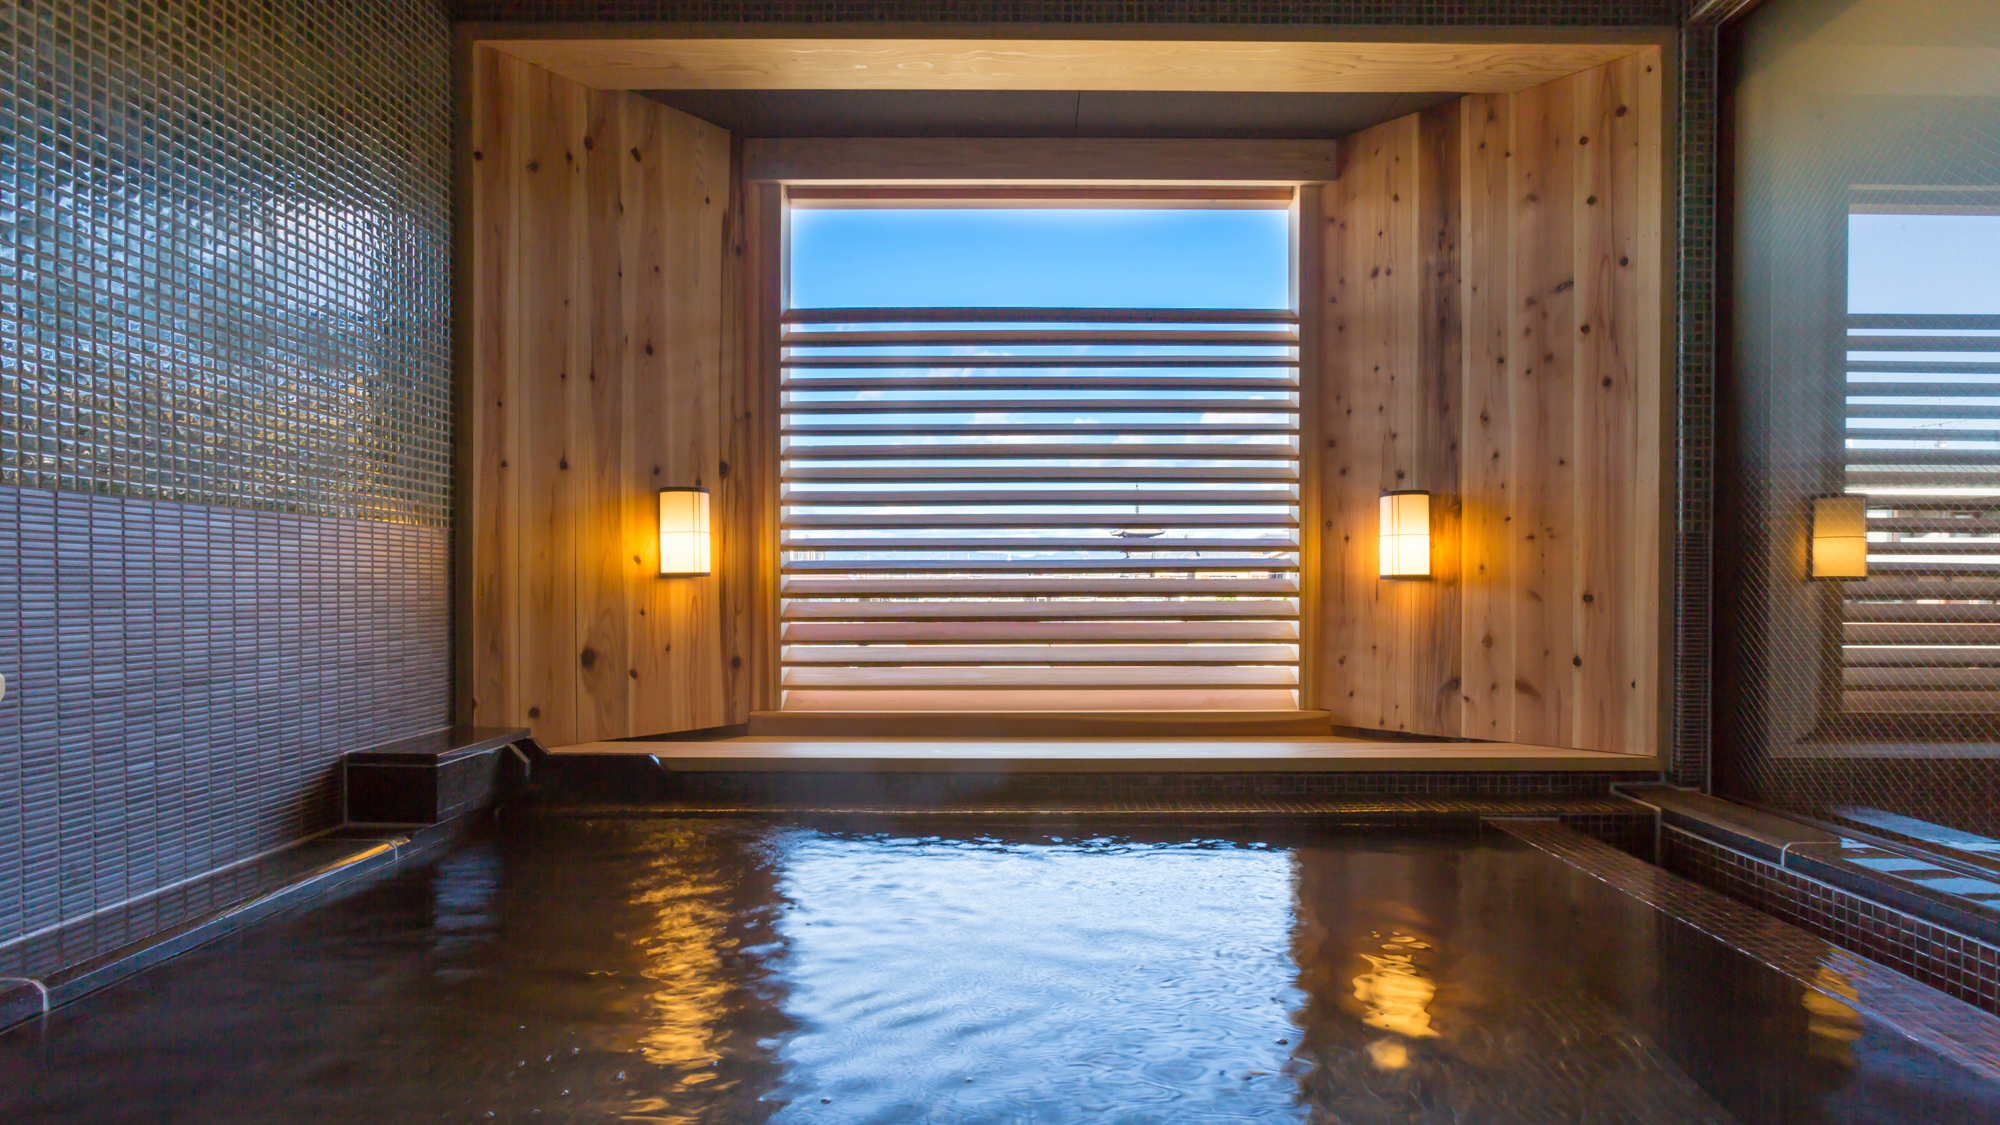 東山エリアのシンボル 八坂の塔を浴室内から遠望する貸切風呂「蕩 八坂to-yasaka」